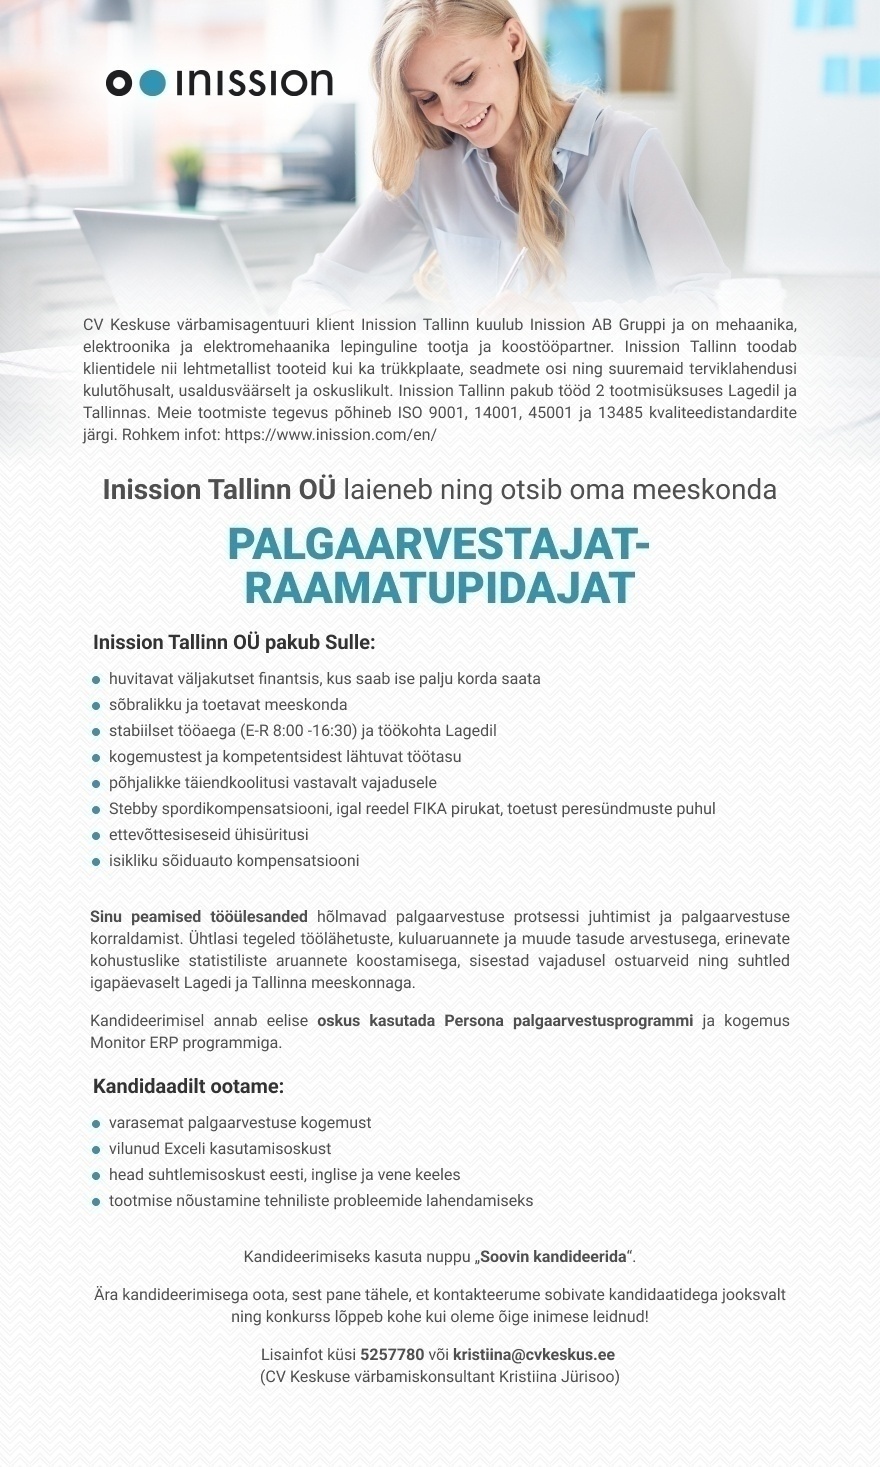 Inission Tallinn OÜ PALGAARVESTAJA-RAAMATUPIDAJA